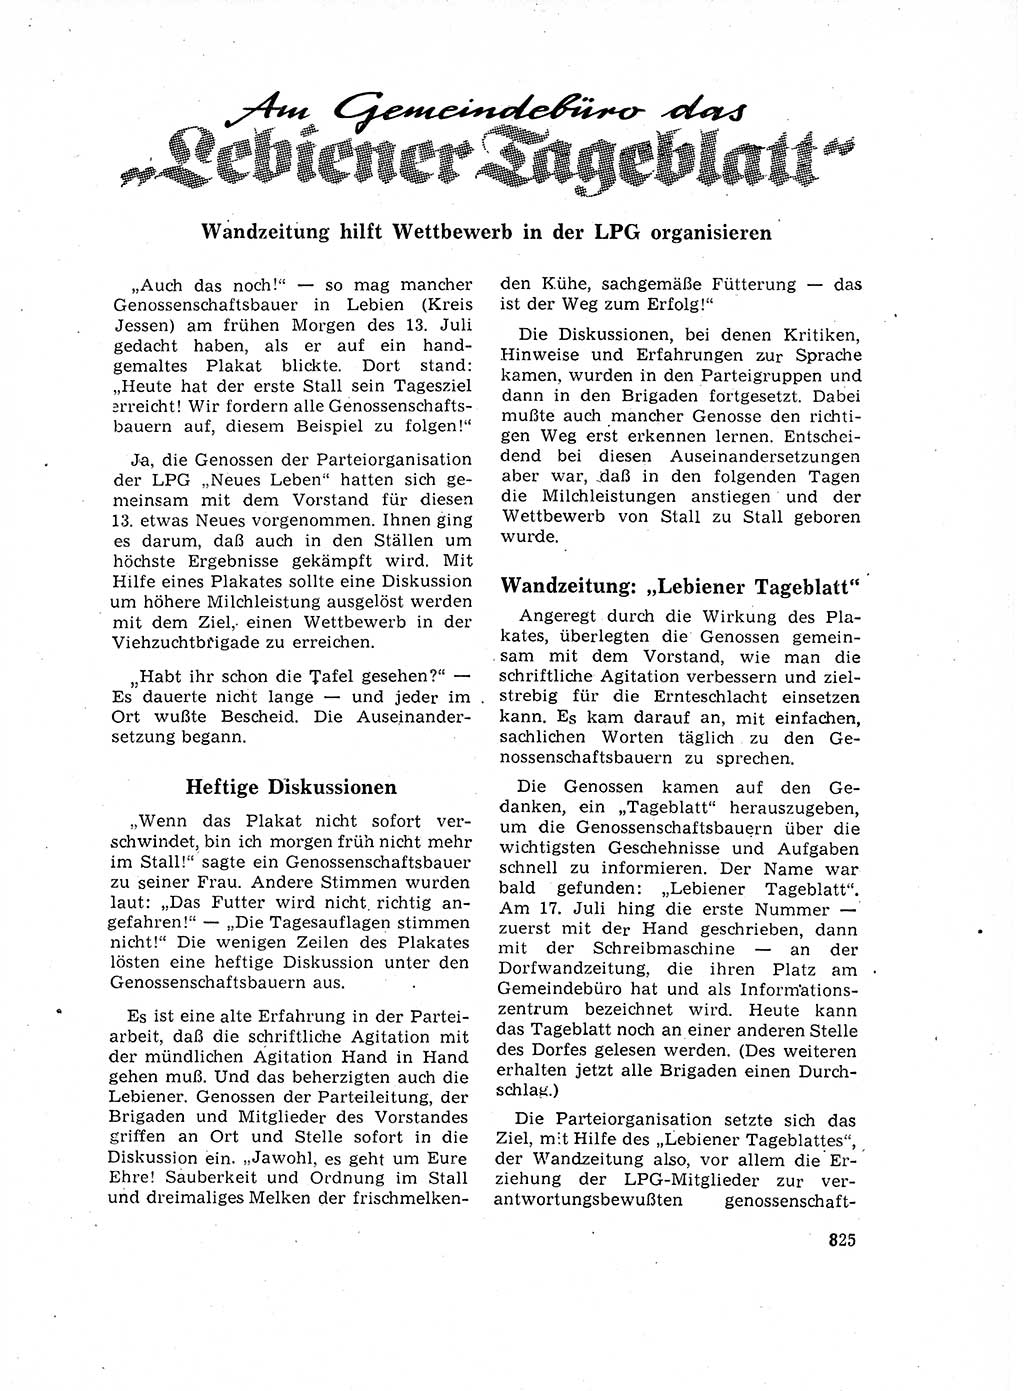 Neuer Weg (NW), Organ des Zentralkomitees (ZK) der SED (Sozialistische Einheitspartei Deutschlands) für Fragen des Parteilebens, 17. Jahrgang [Deutsche Demokratische Republik (DDR)] 1962, Seite 825 (NW ZK SED DDR 1962, S. 825)